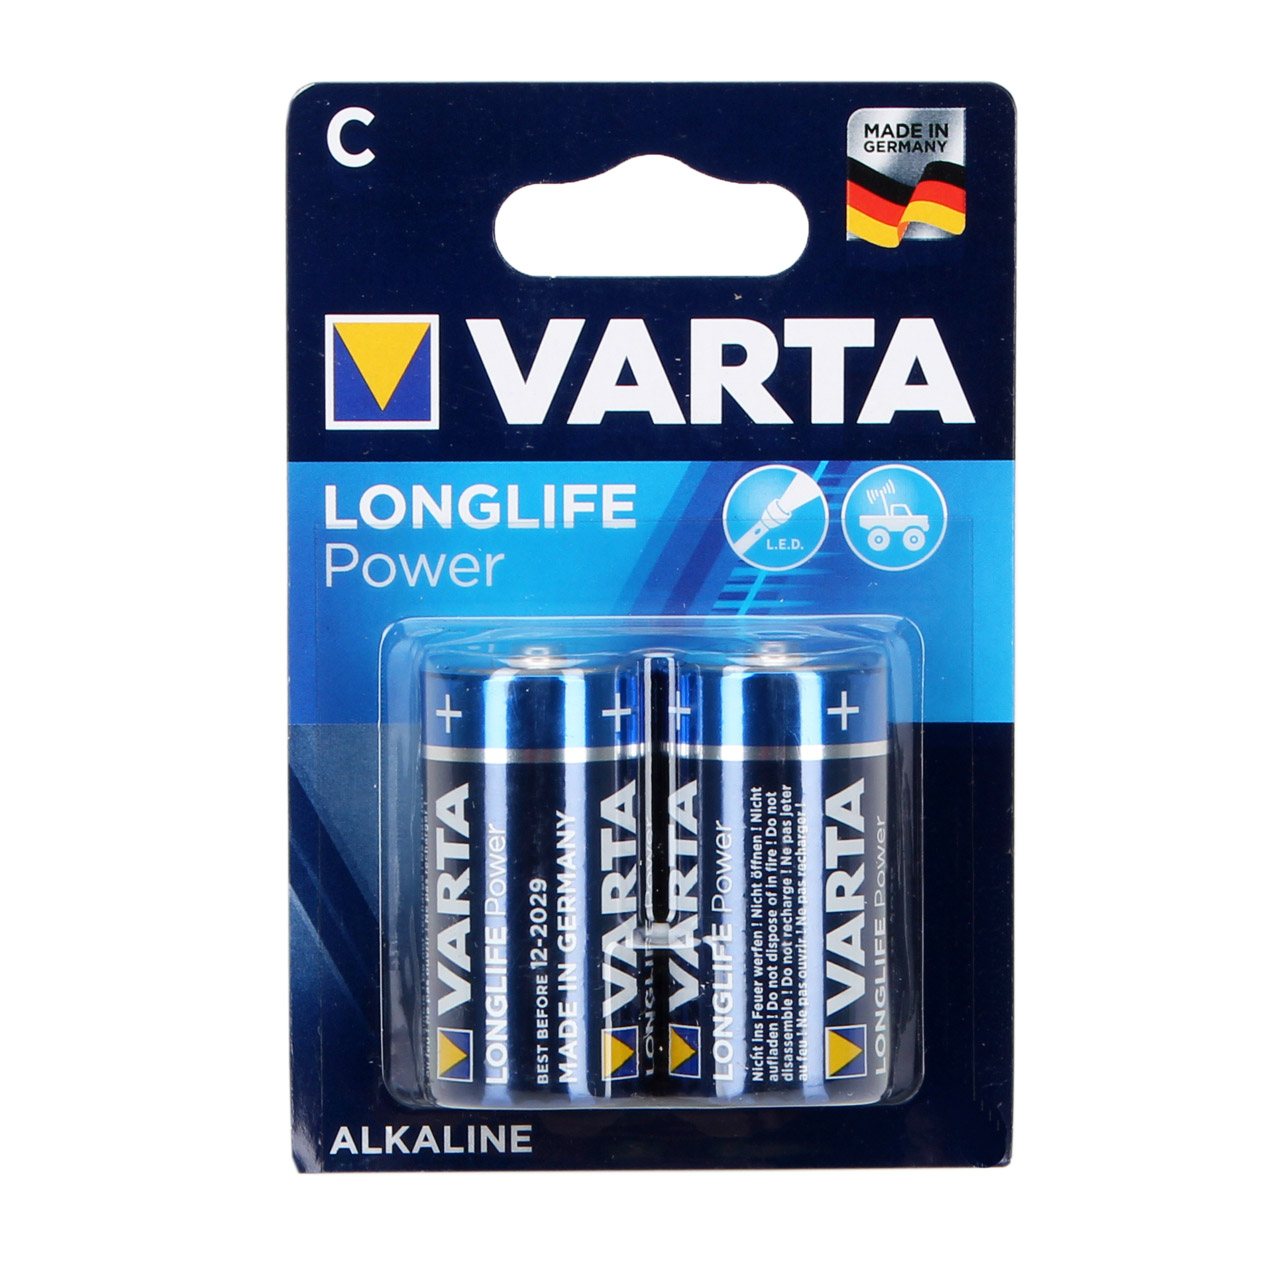 2x VARTA Batterie LONGLIFE POWER Alkalin C LR14 Baby 1,5V